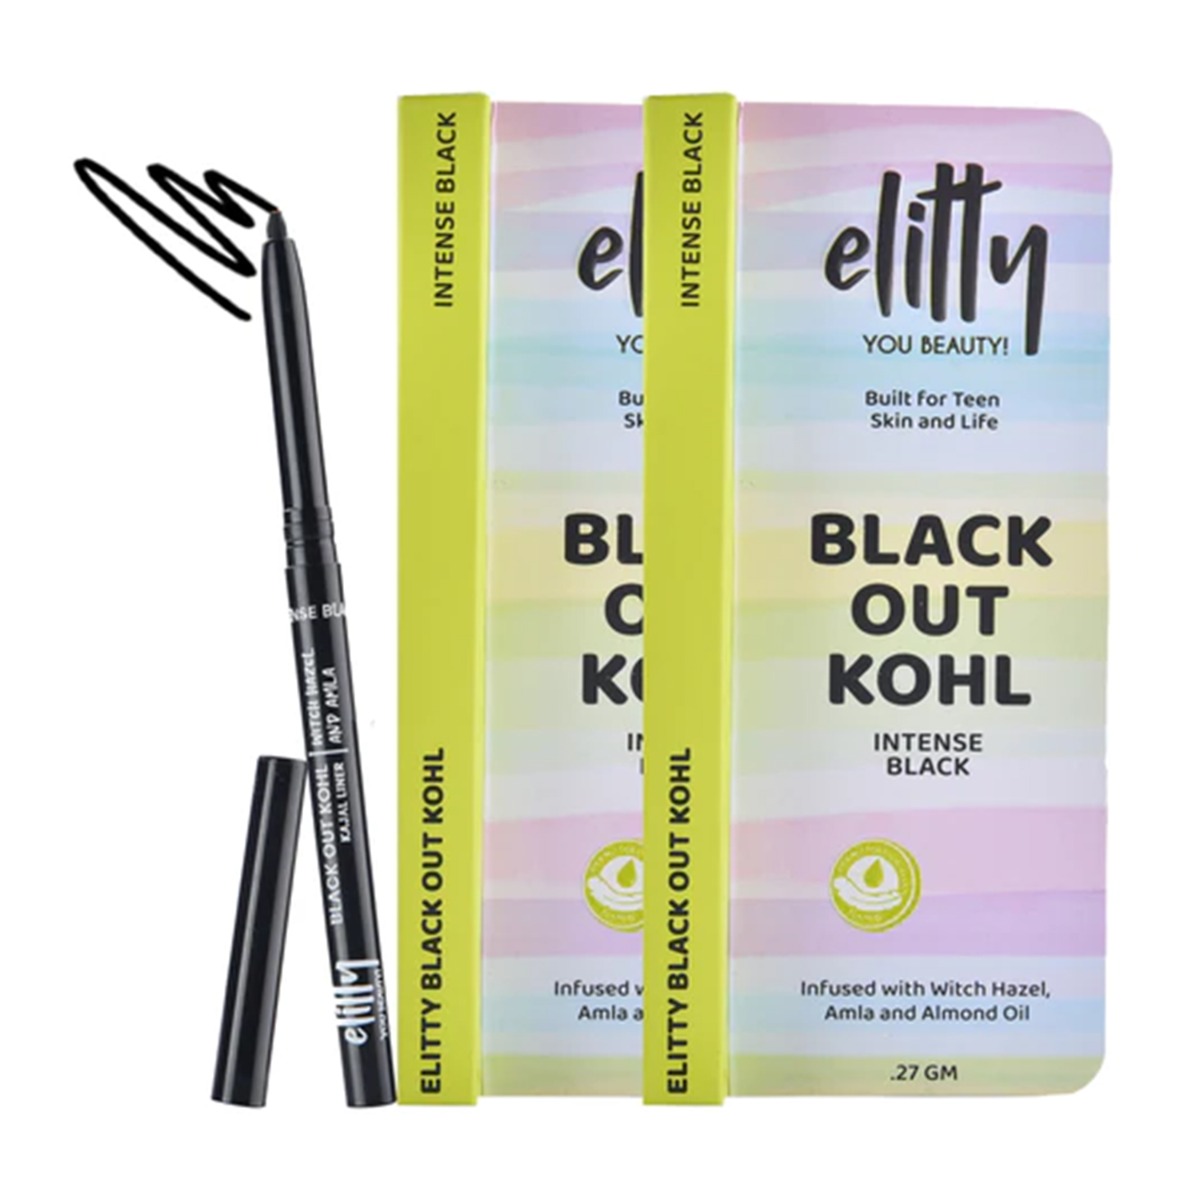 Elitty Black Out Kohl - Intense Black Kajal, Pack Of 2